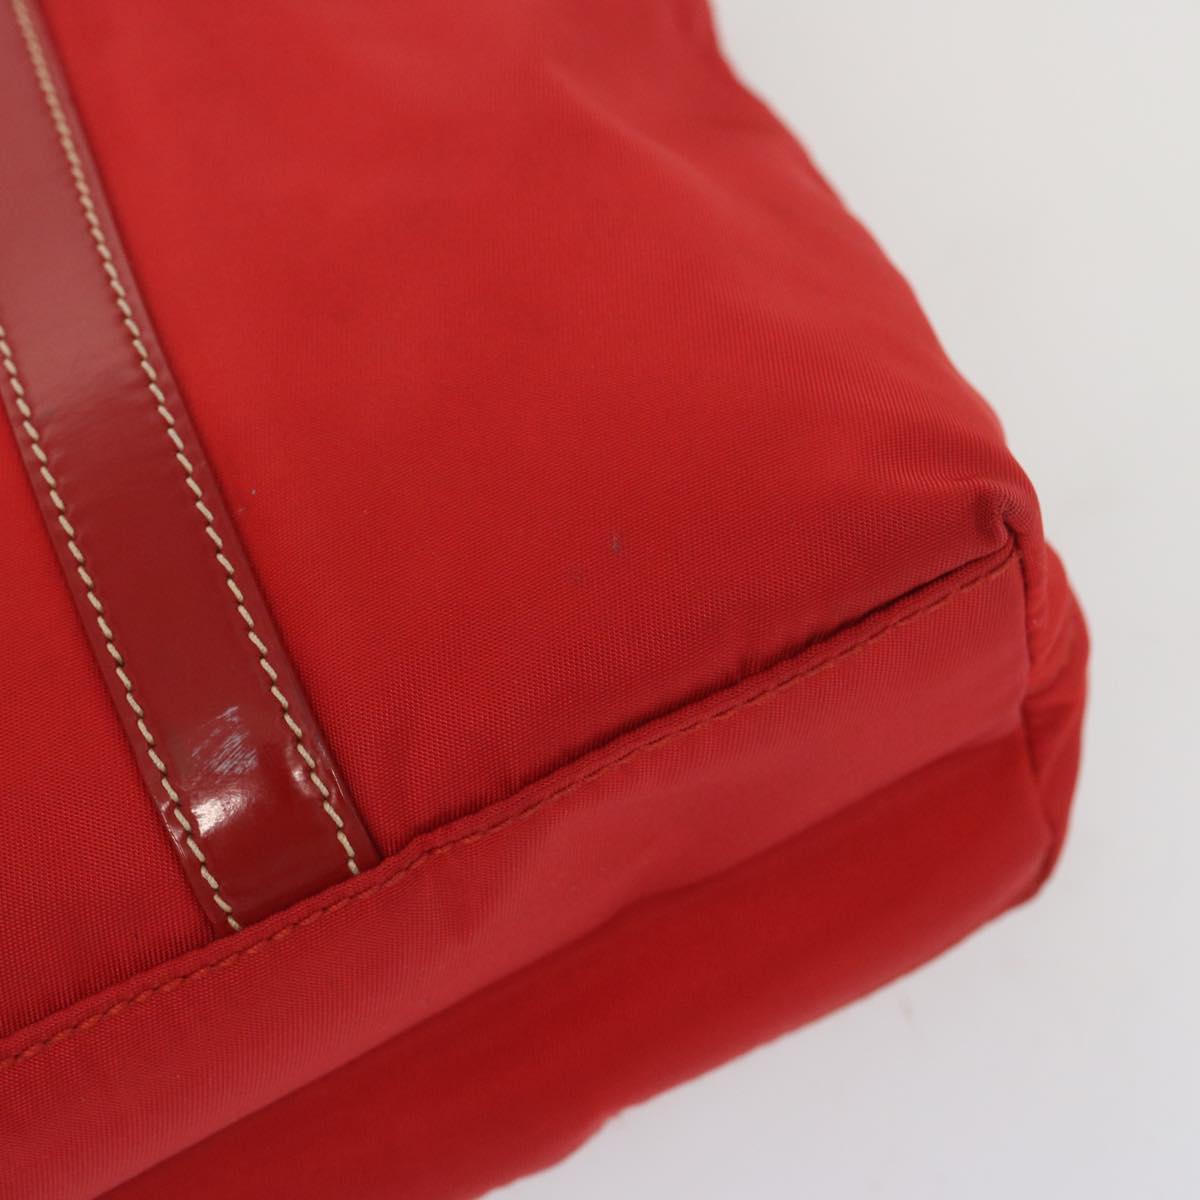 PRADA Hand Bag Nylon 2way Red Auth 67986